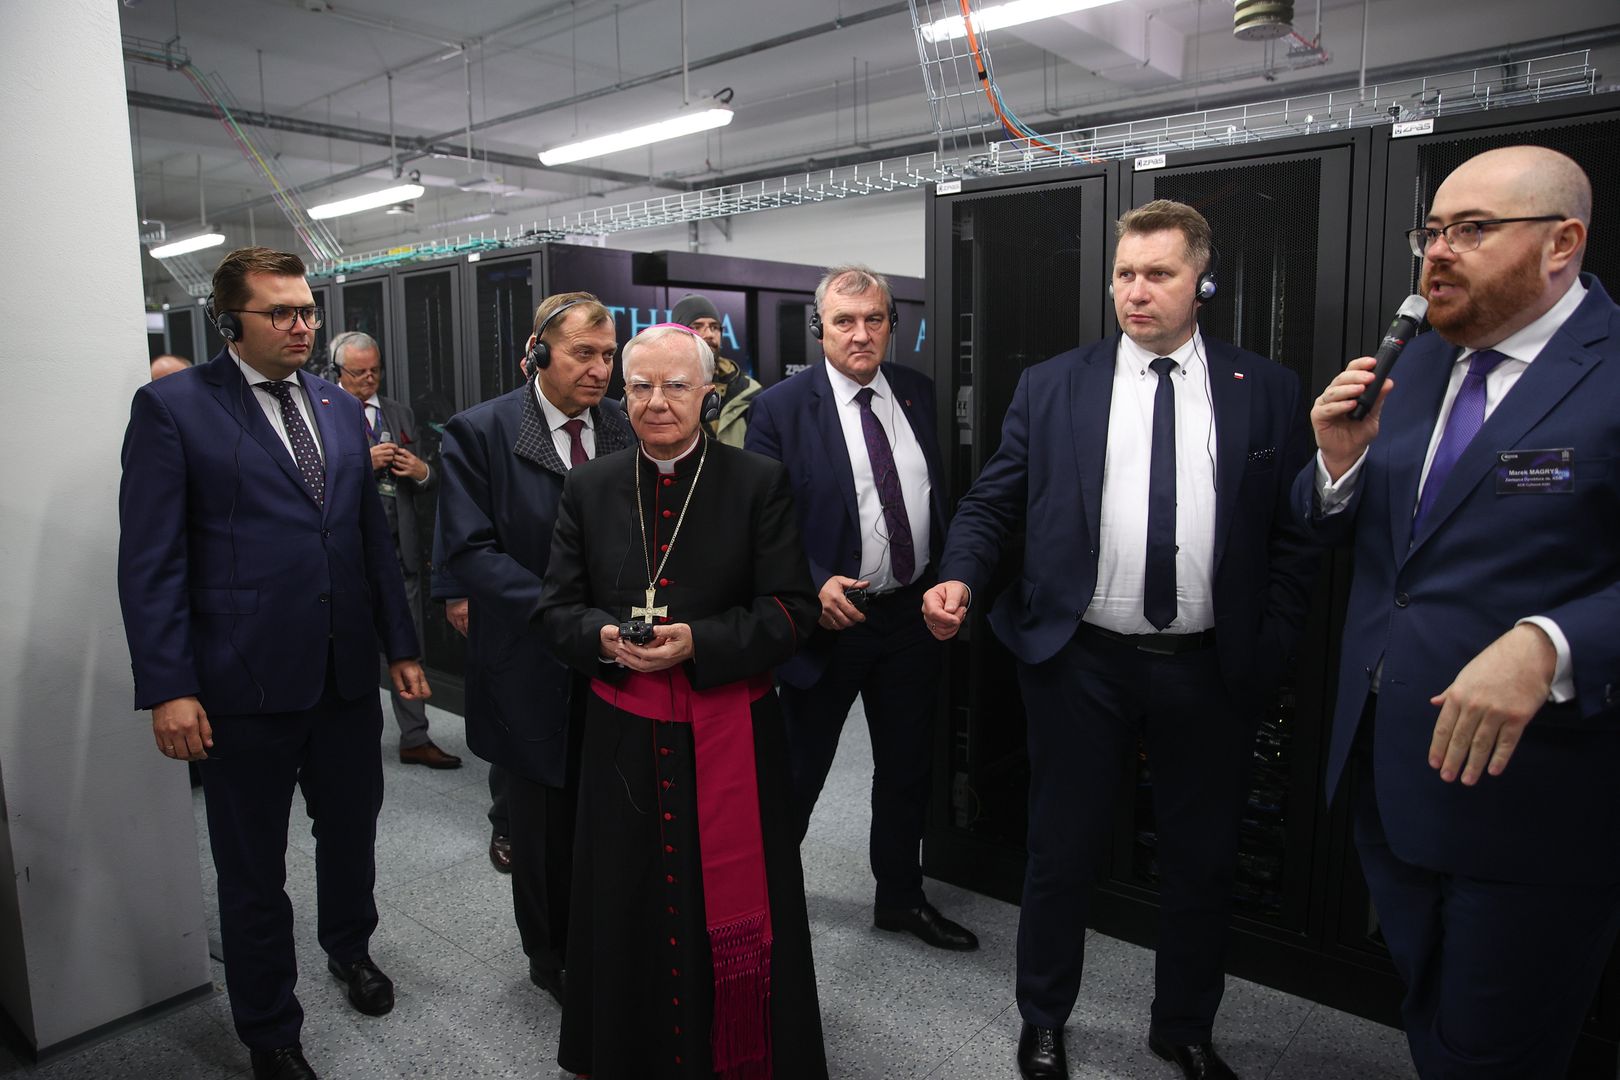 Arcybiskup poświęcił najszybszy komputer w Polsce. Uroczystość w Krakowie